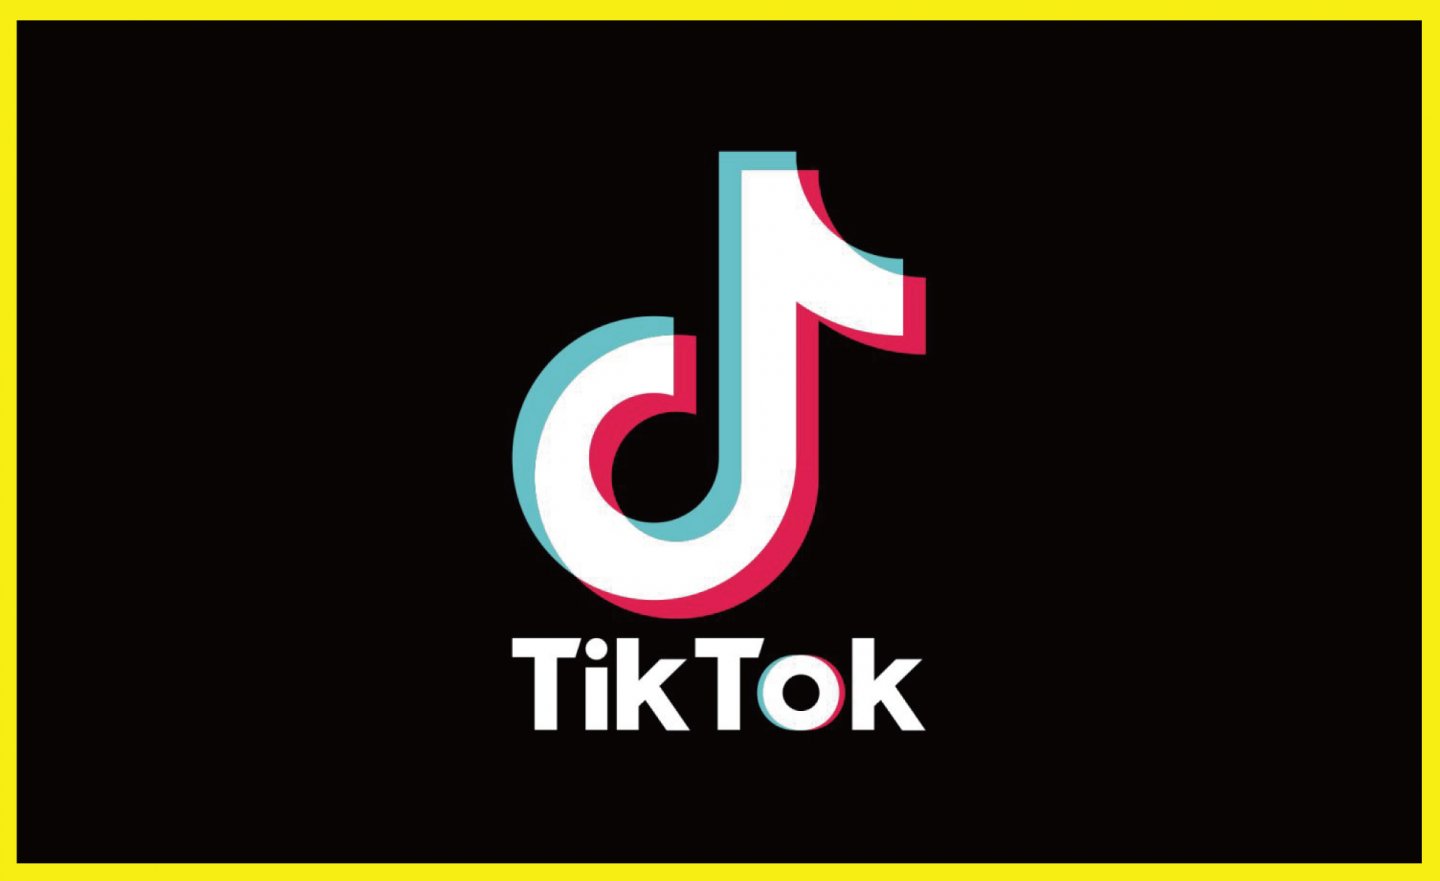 國外研究指出TikTok 的廣告營收 2027 年將超越 META 和 YouTube 的營收總和